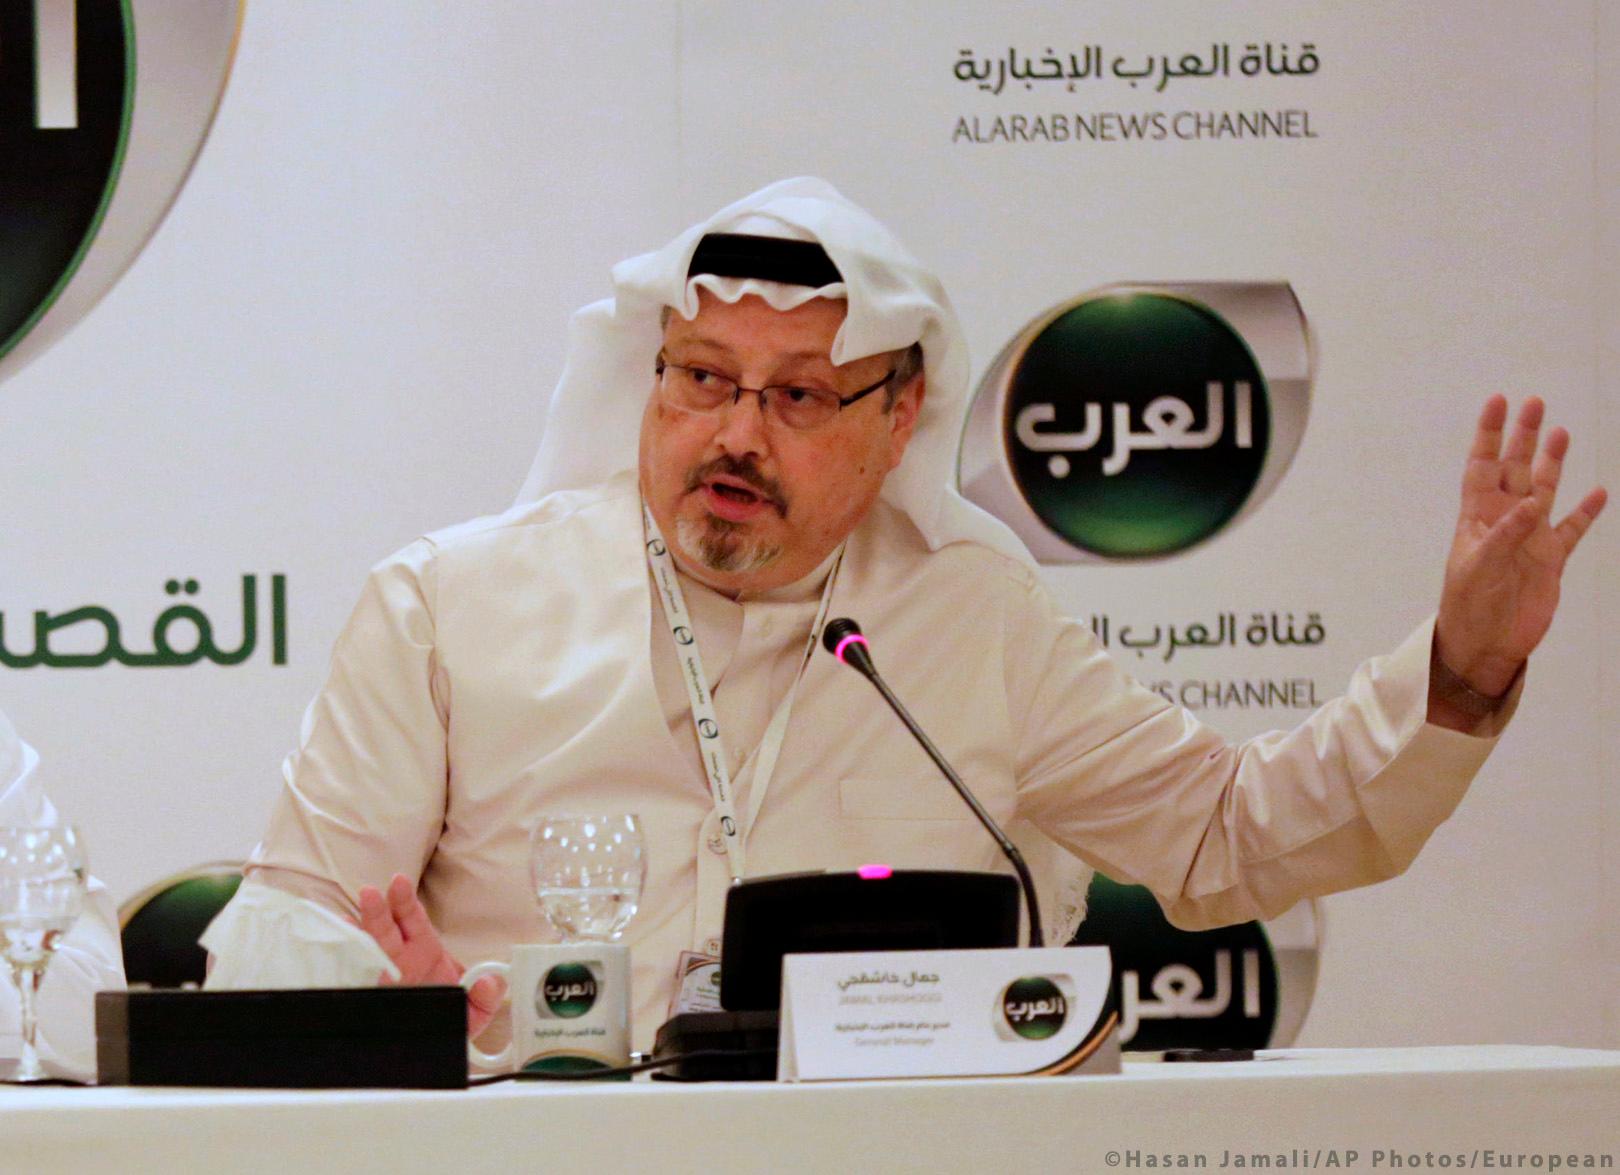 Kašogi: Bio žestoki kritičar vladajućeg režima u Saudijskoj Arabiji - Avaz